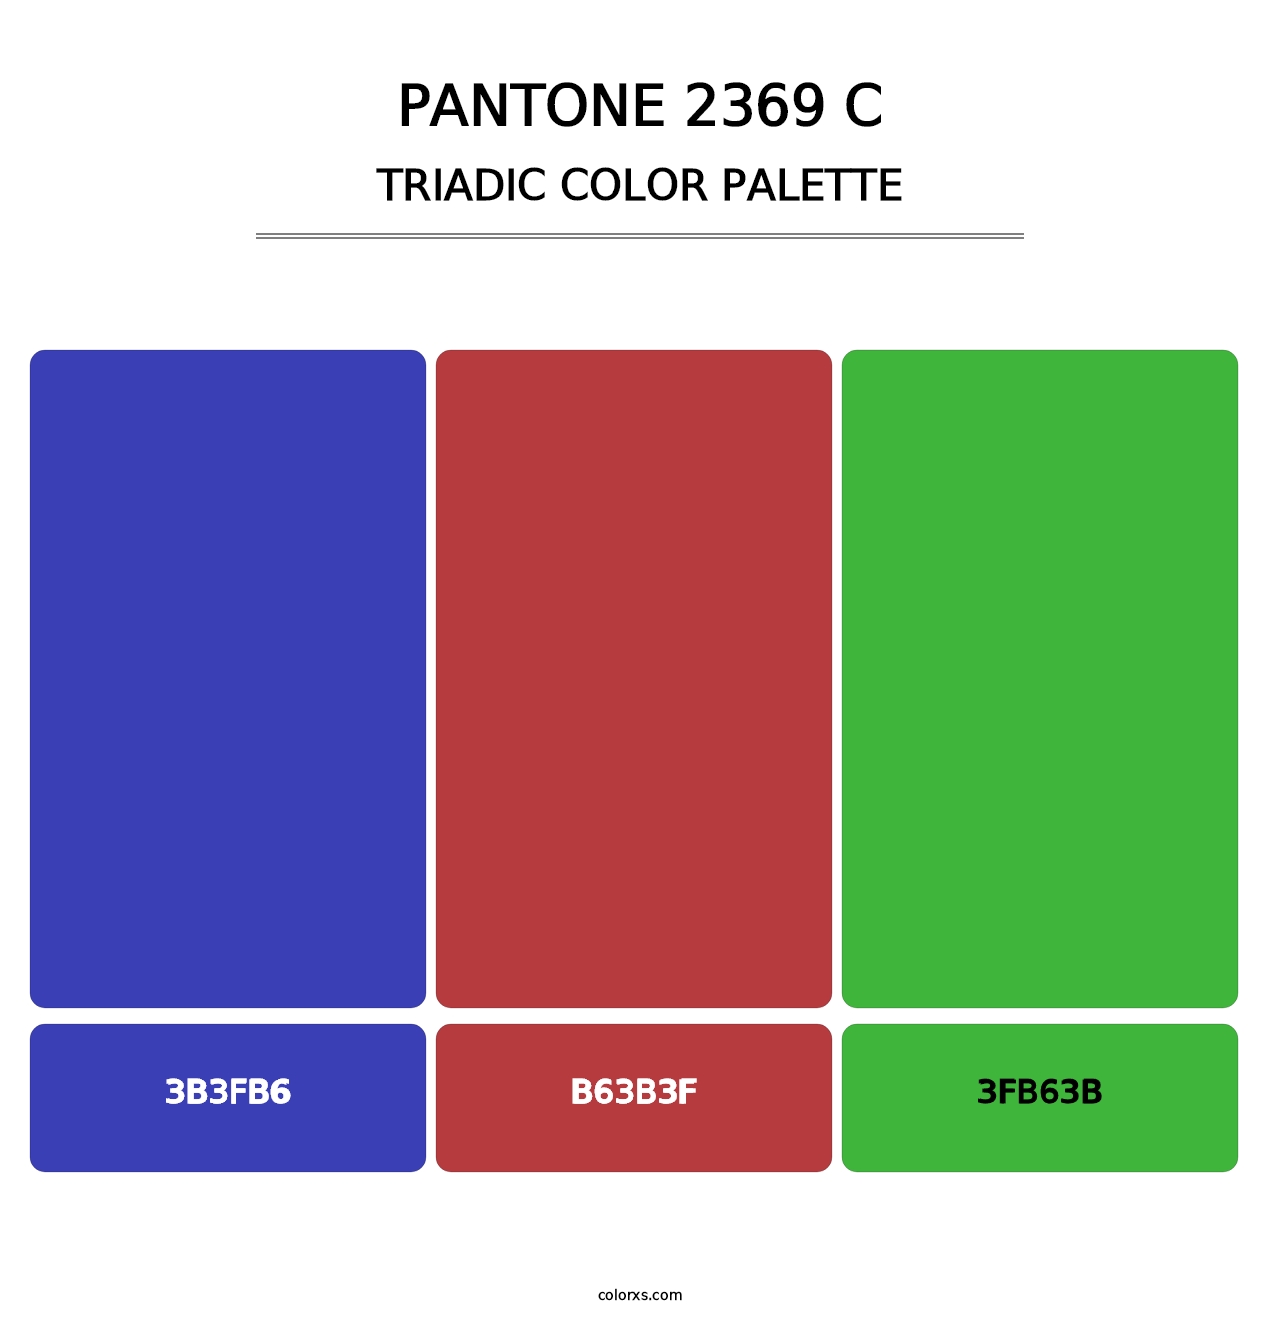 PANTONE 2369 C - Triadic Color Palette